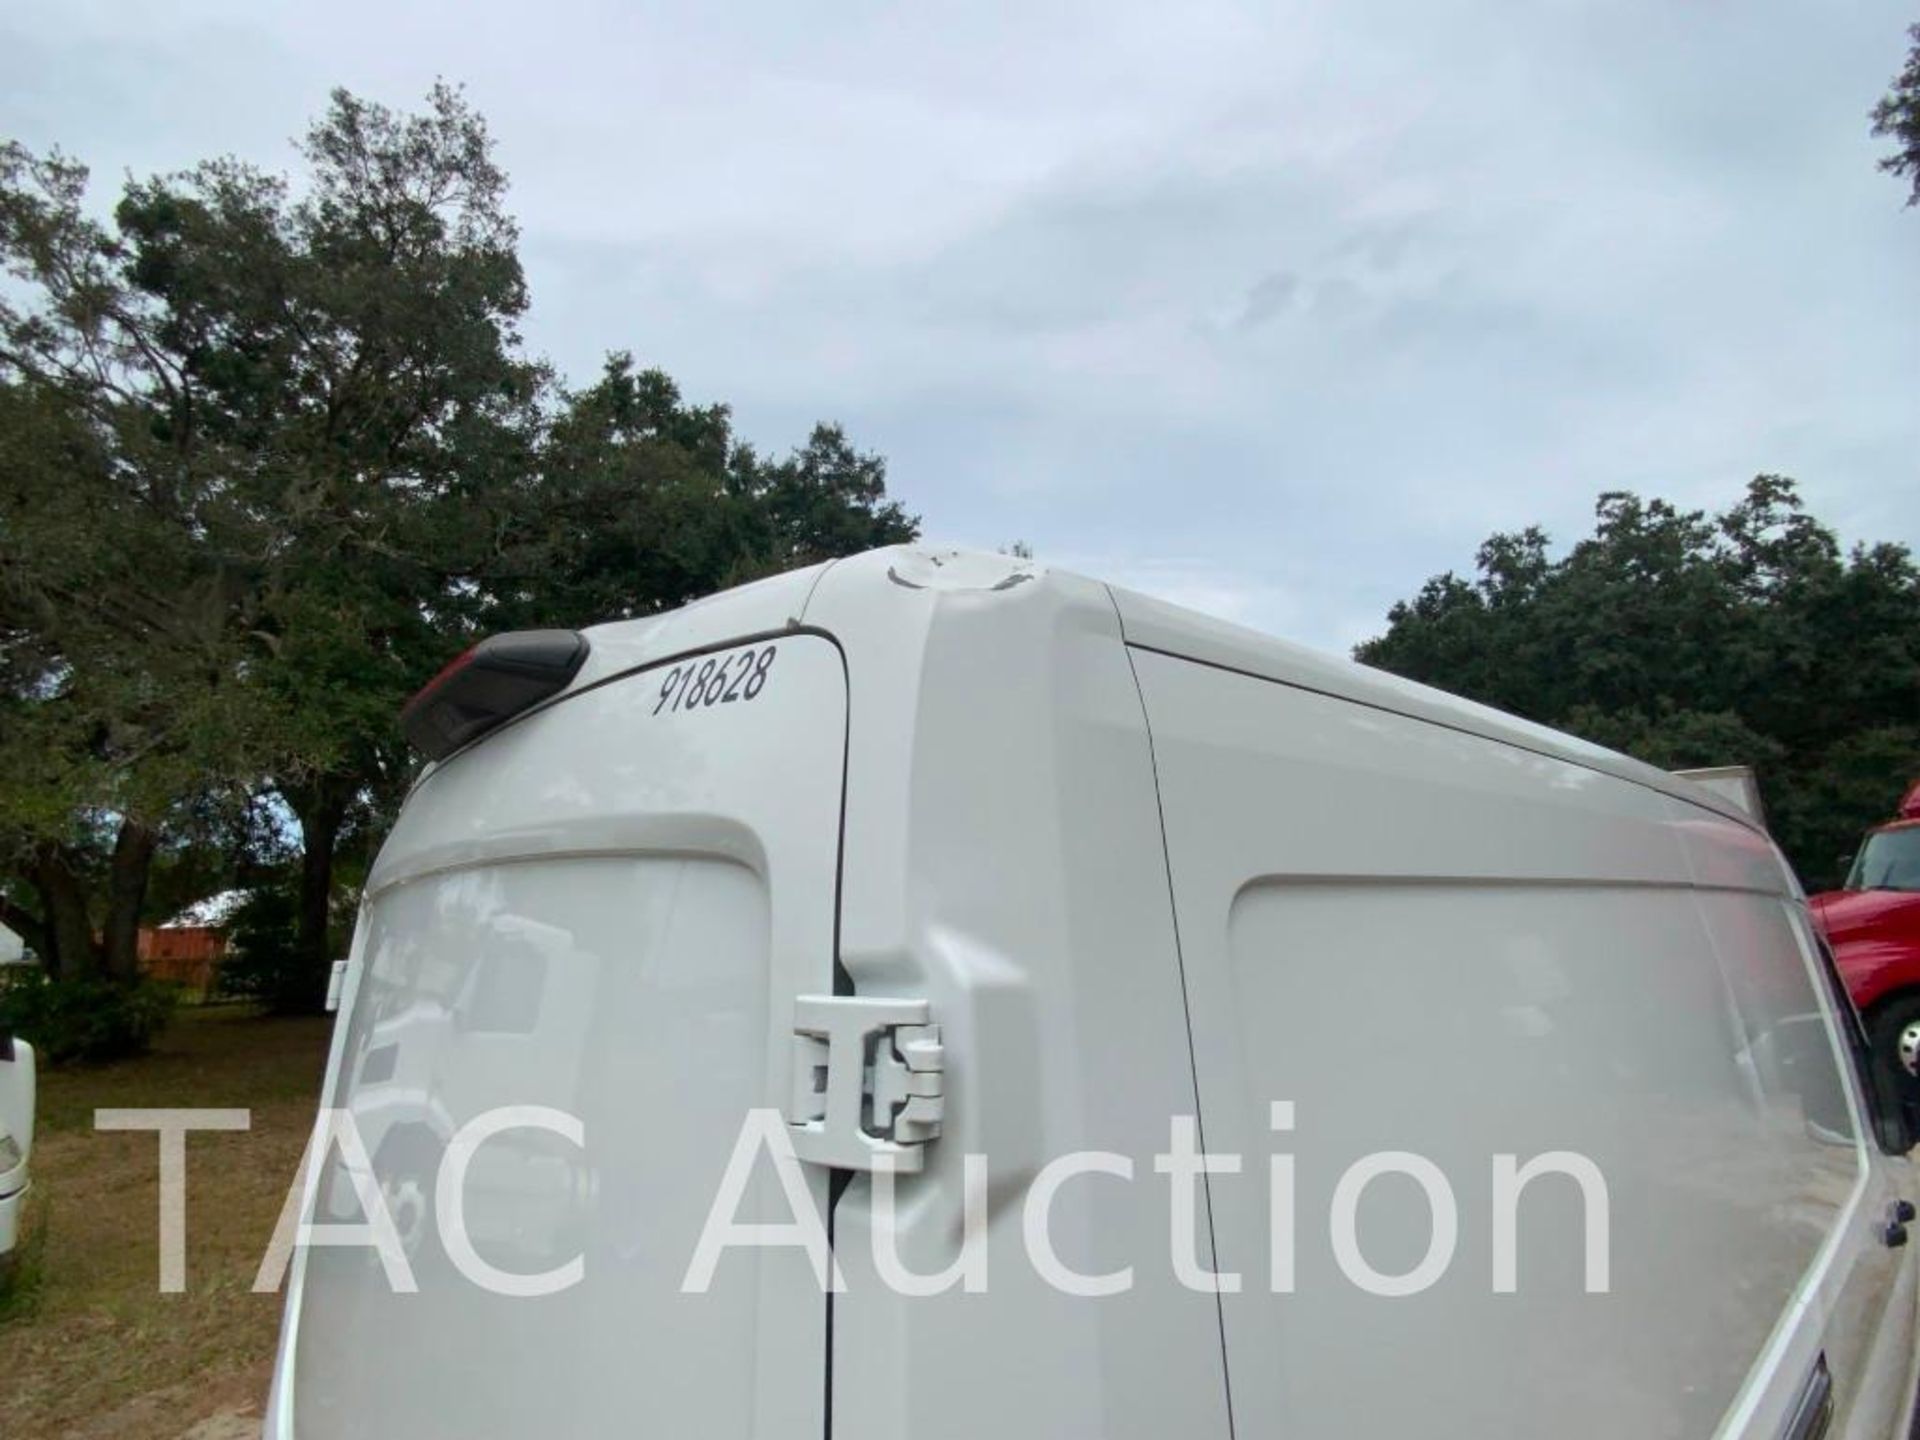 2019 Ford Transit 150 Cargo Van - Image 43 of 54